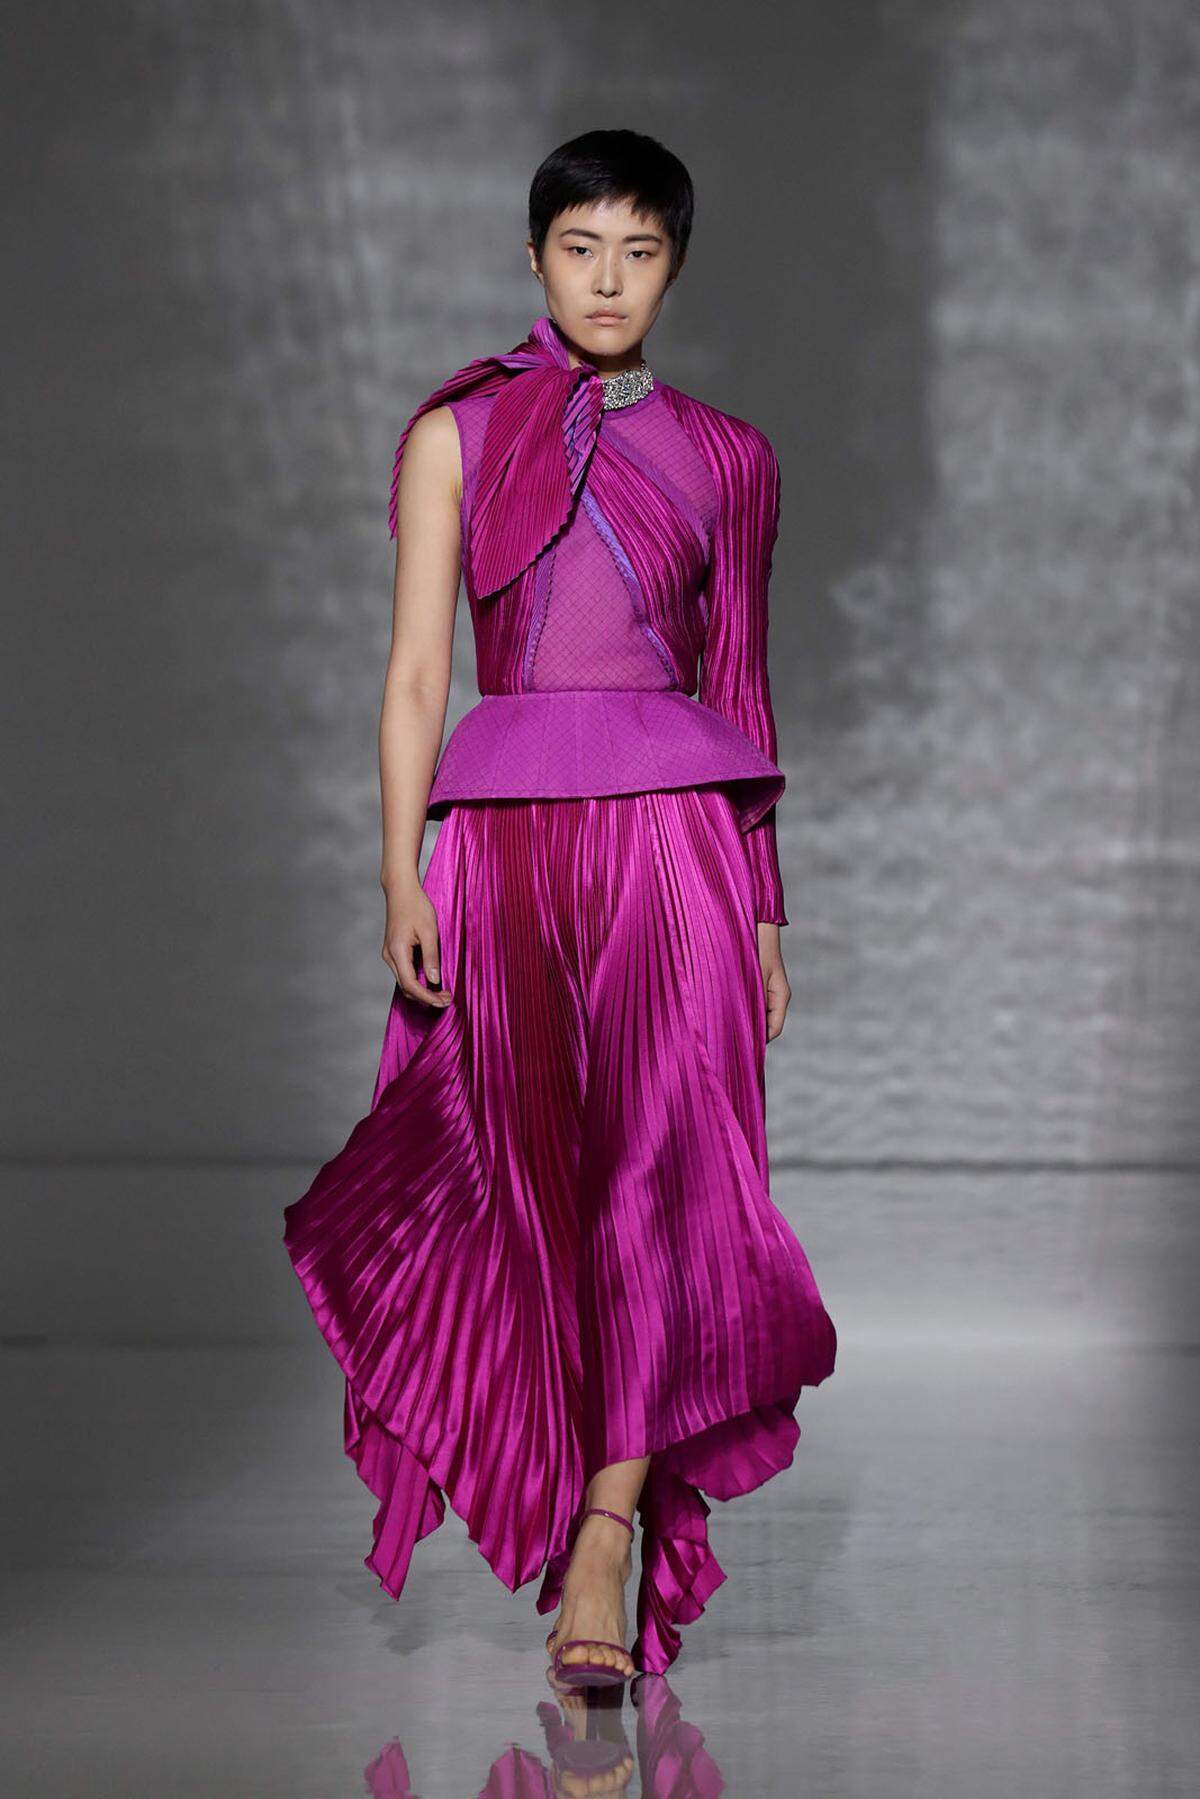 Ob Herzogin Meghan bald dieses Outfit tragen wird? Immerhin gilt Givenchy-Designerin Clare Waight Keller als einer der Lieblingsdesignerinnen der Herzogin von Sussex.